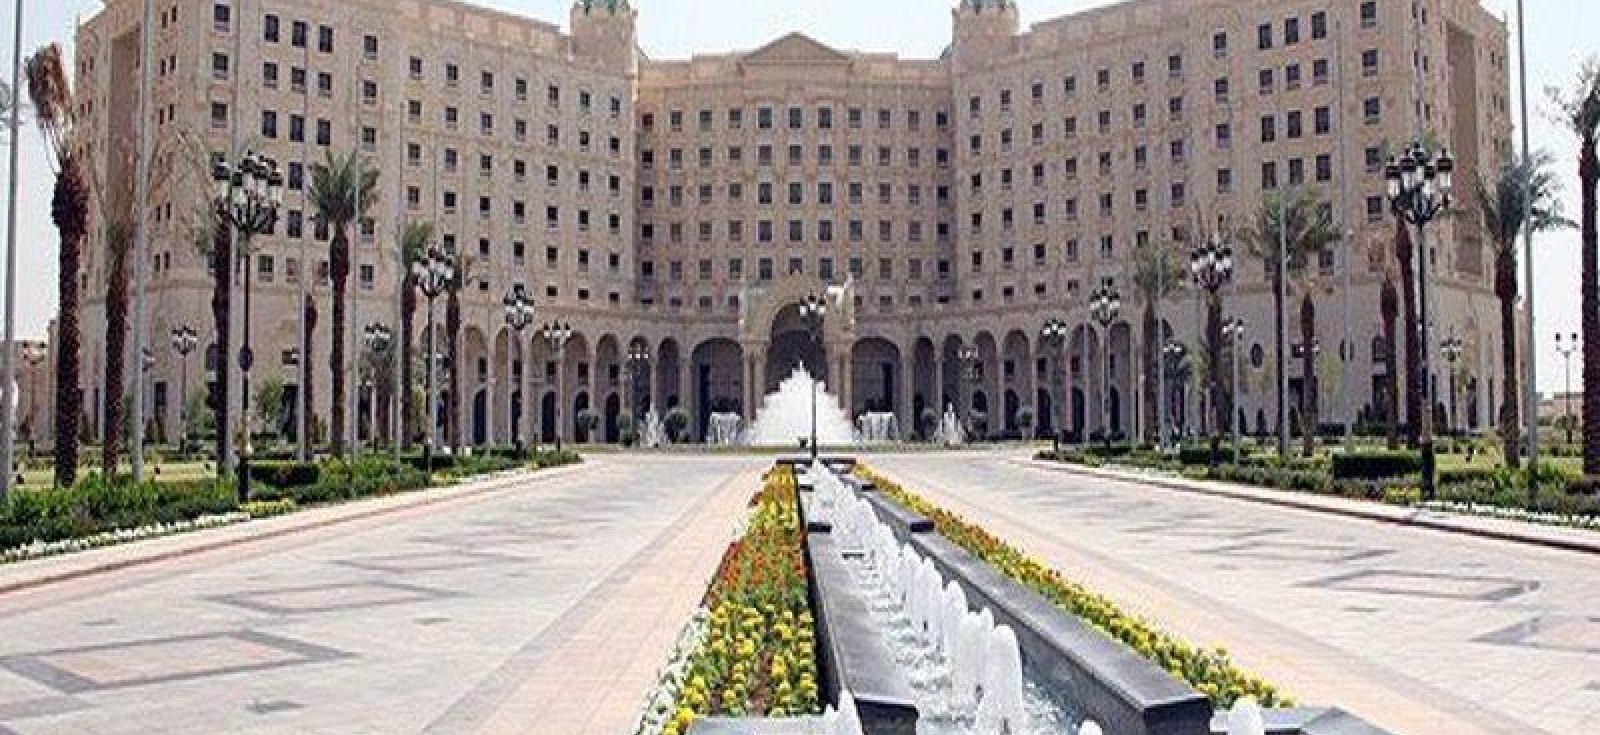 ЗМІ показали розкішний готель, який перетворили на в'язницю для саудівських принців-корупціонерів. Усіх затриманих звинувачують в корупції і відмиванні грошей.